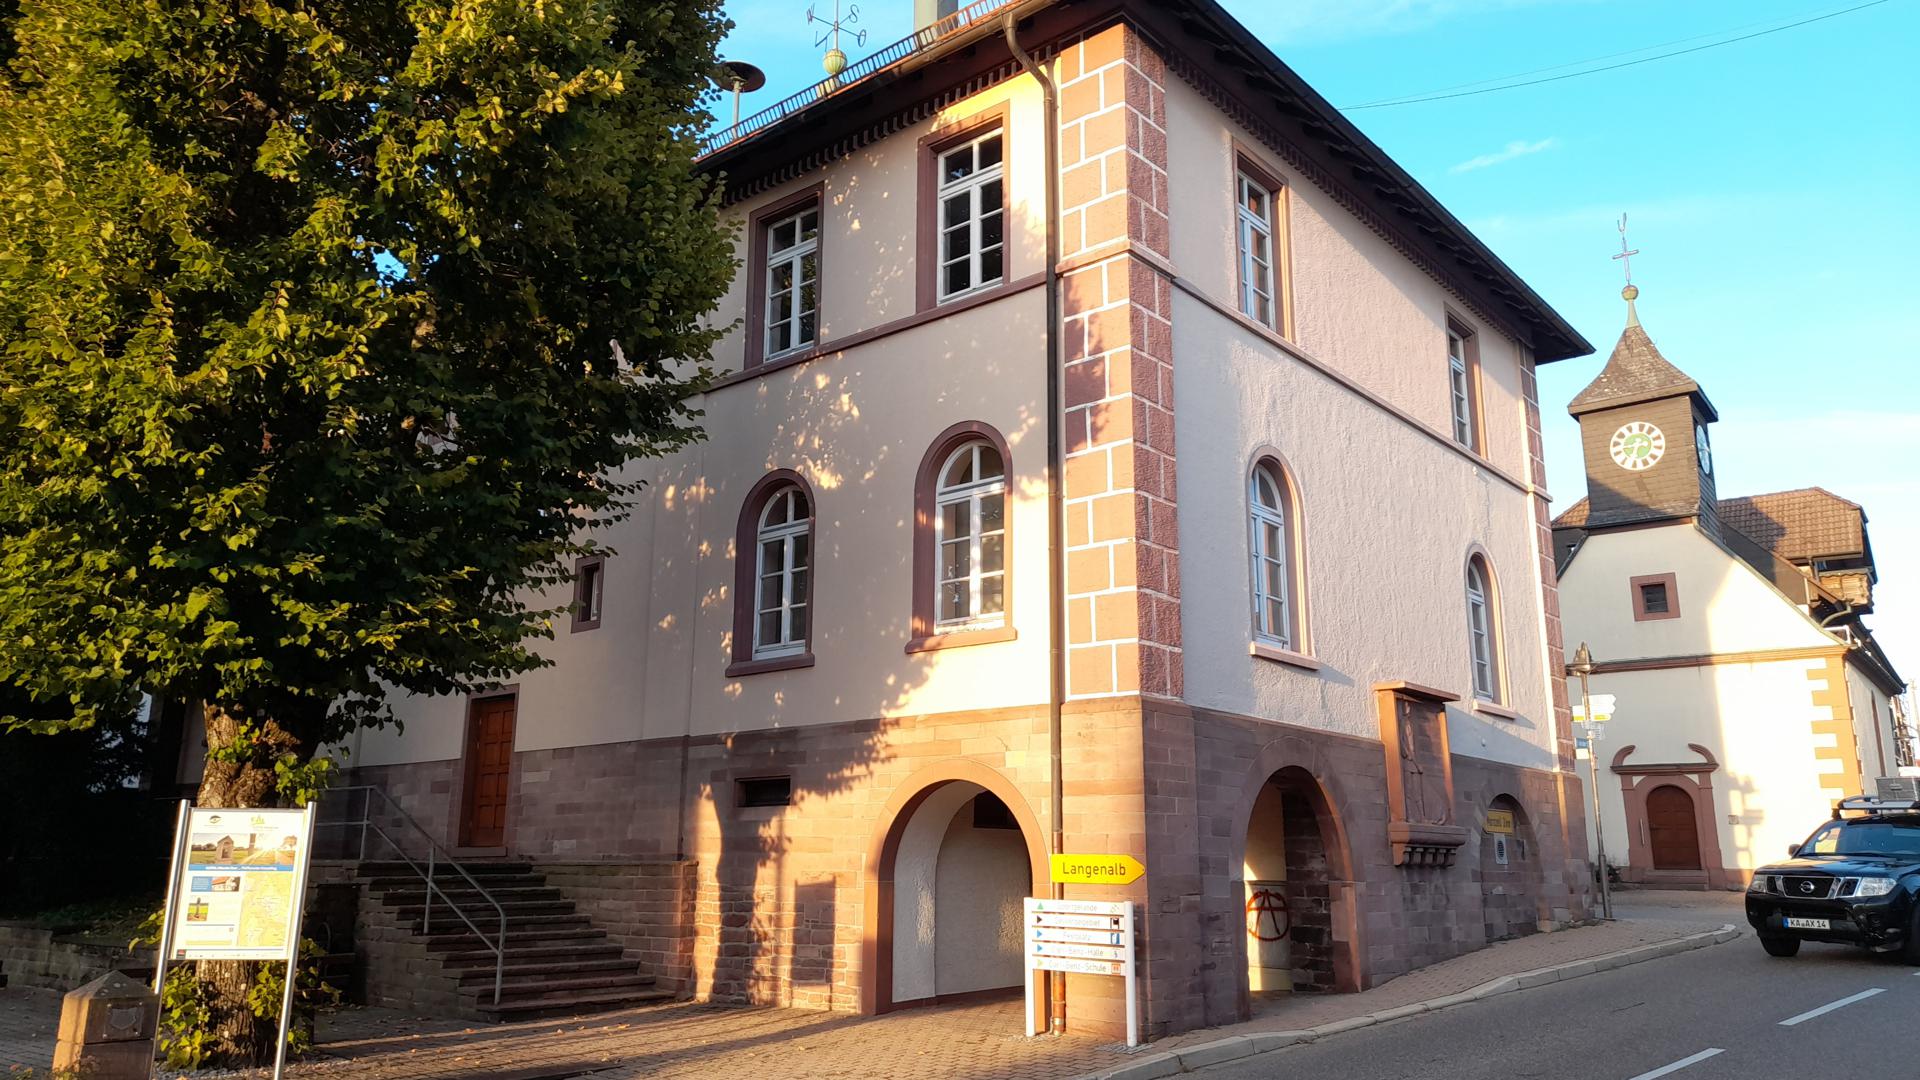 Räume im alten Schulhaus in Pfaffenrot sollen hergerichtet werden, damit die Pfaffenroter Vereine, aber auch die Verwaltung die Räumlichkeiten nutzen können.